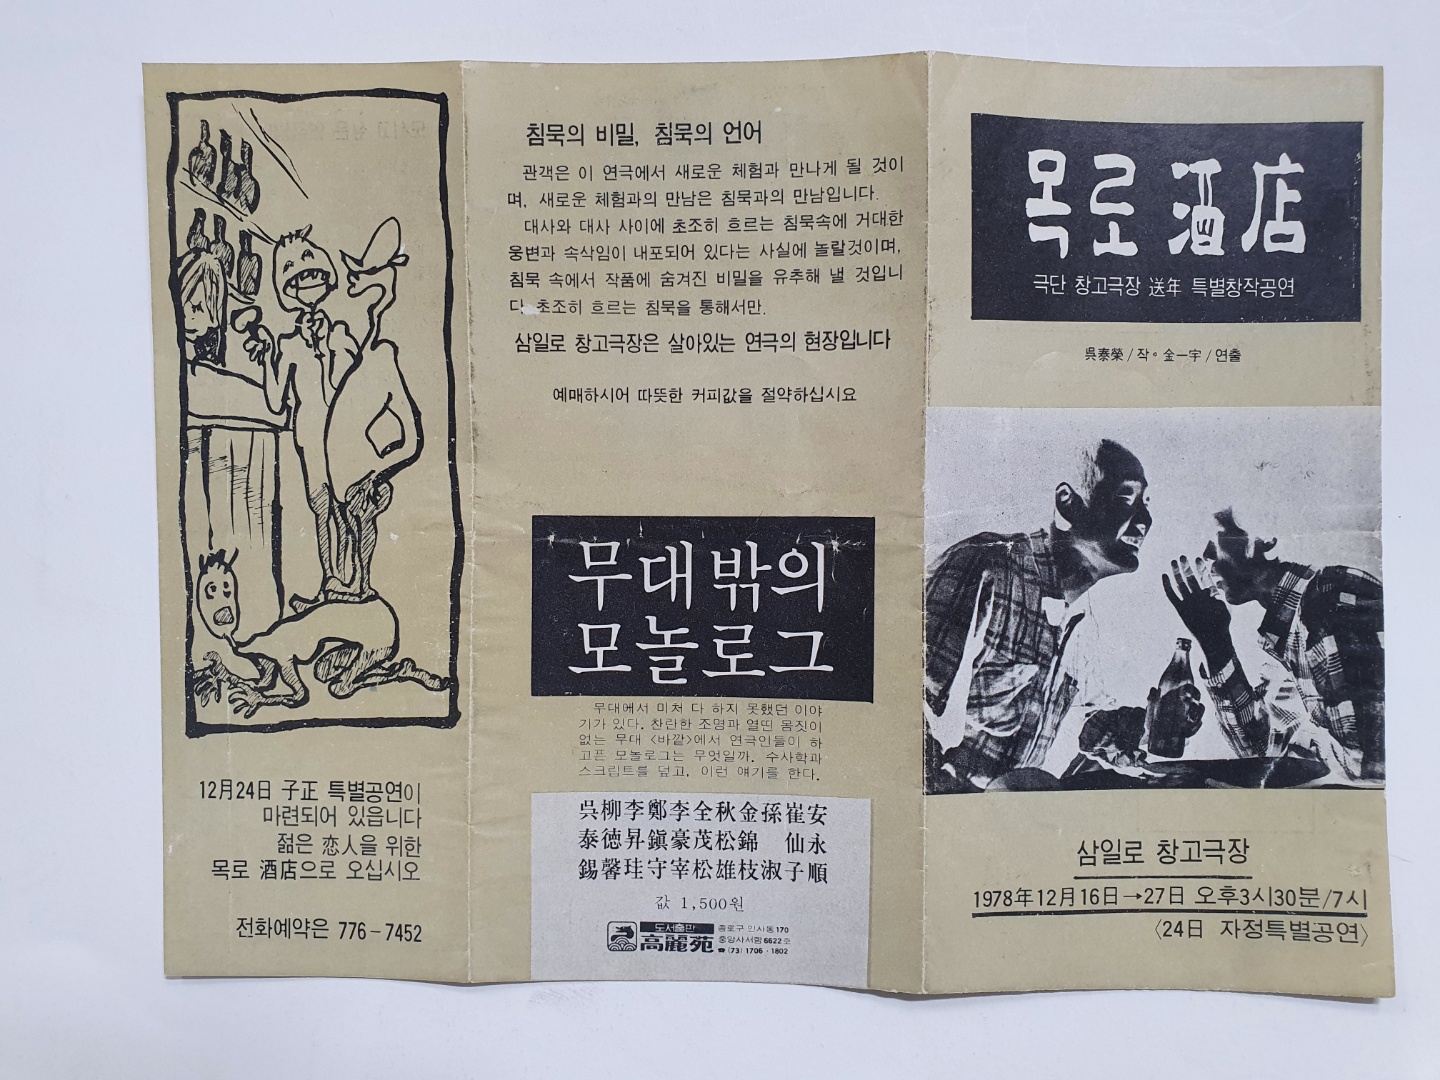 목로주점-극단 창고극장 송년 특별창작공연, 1978